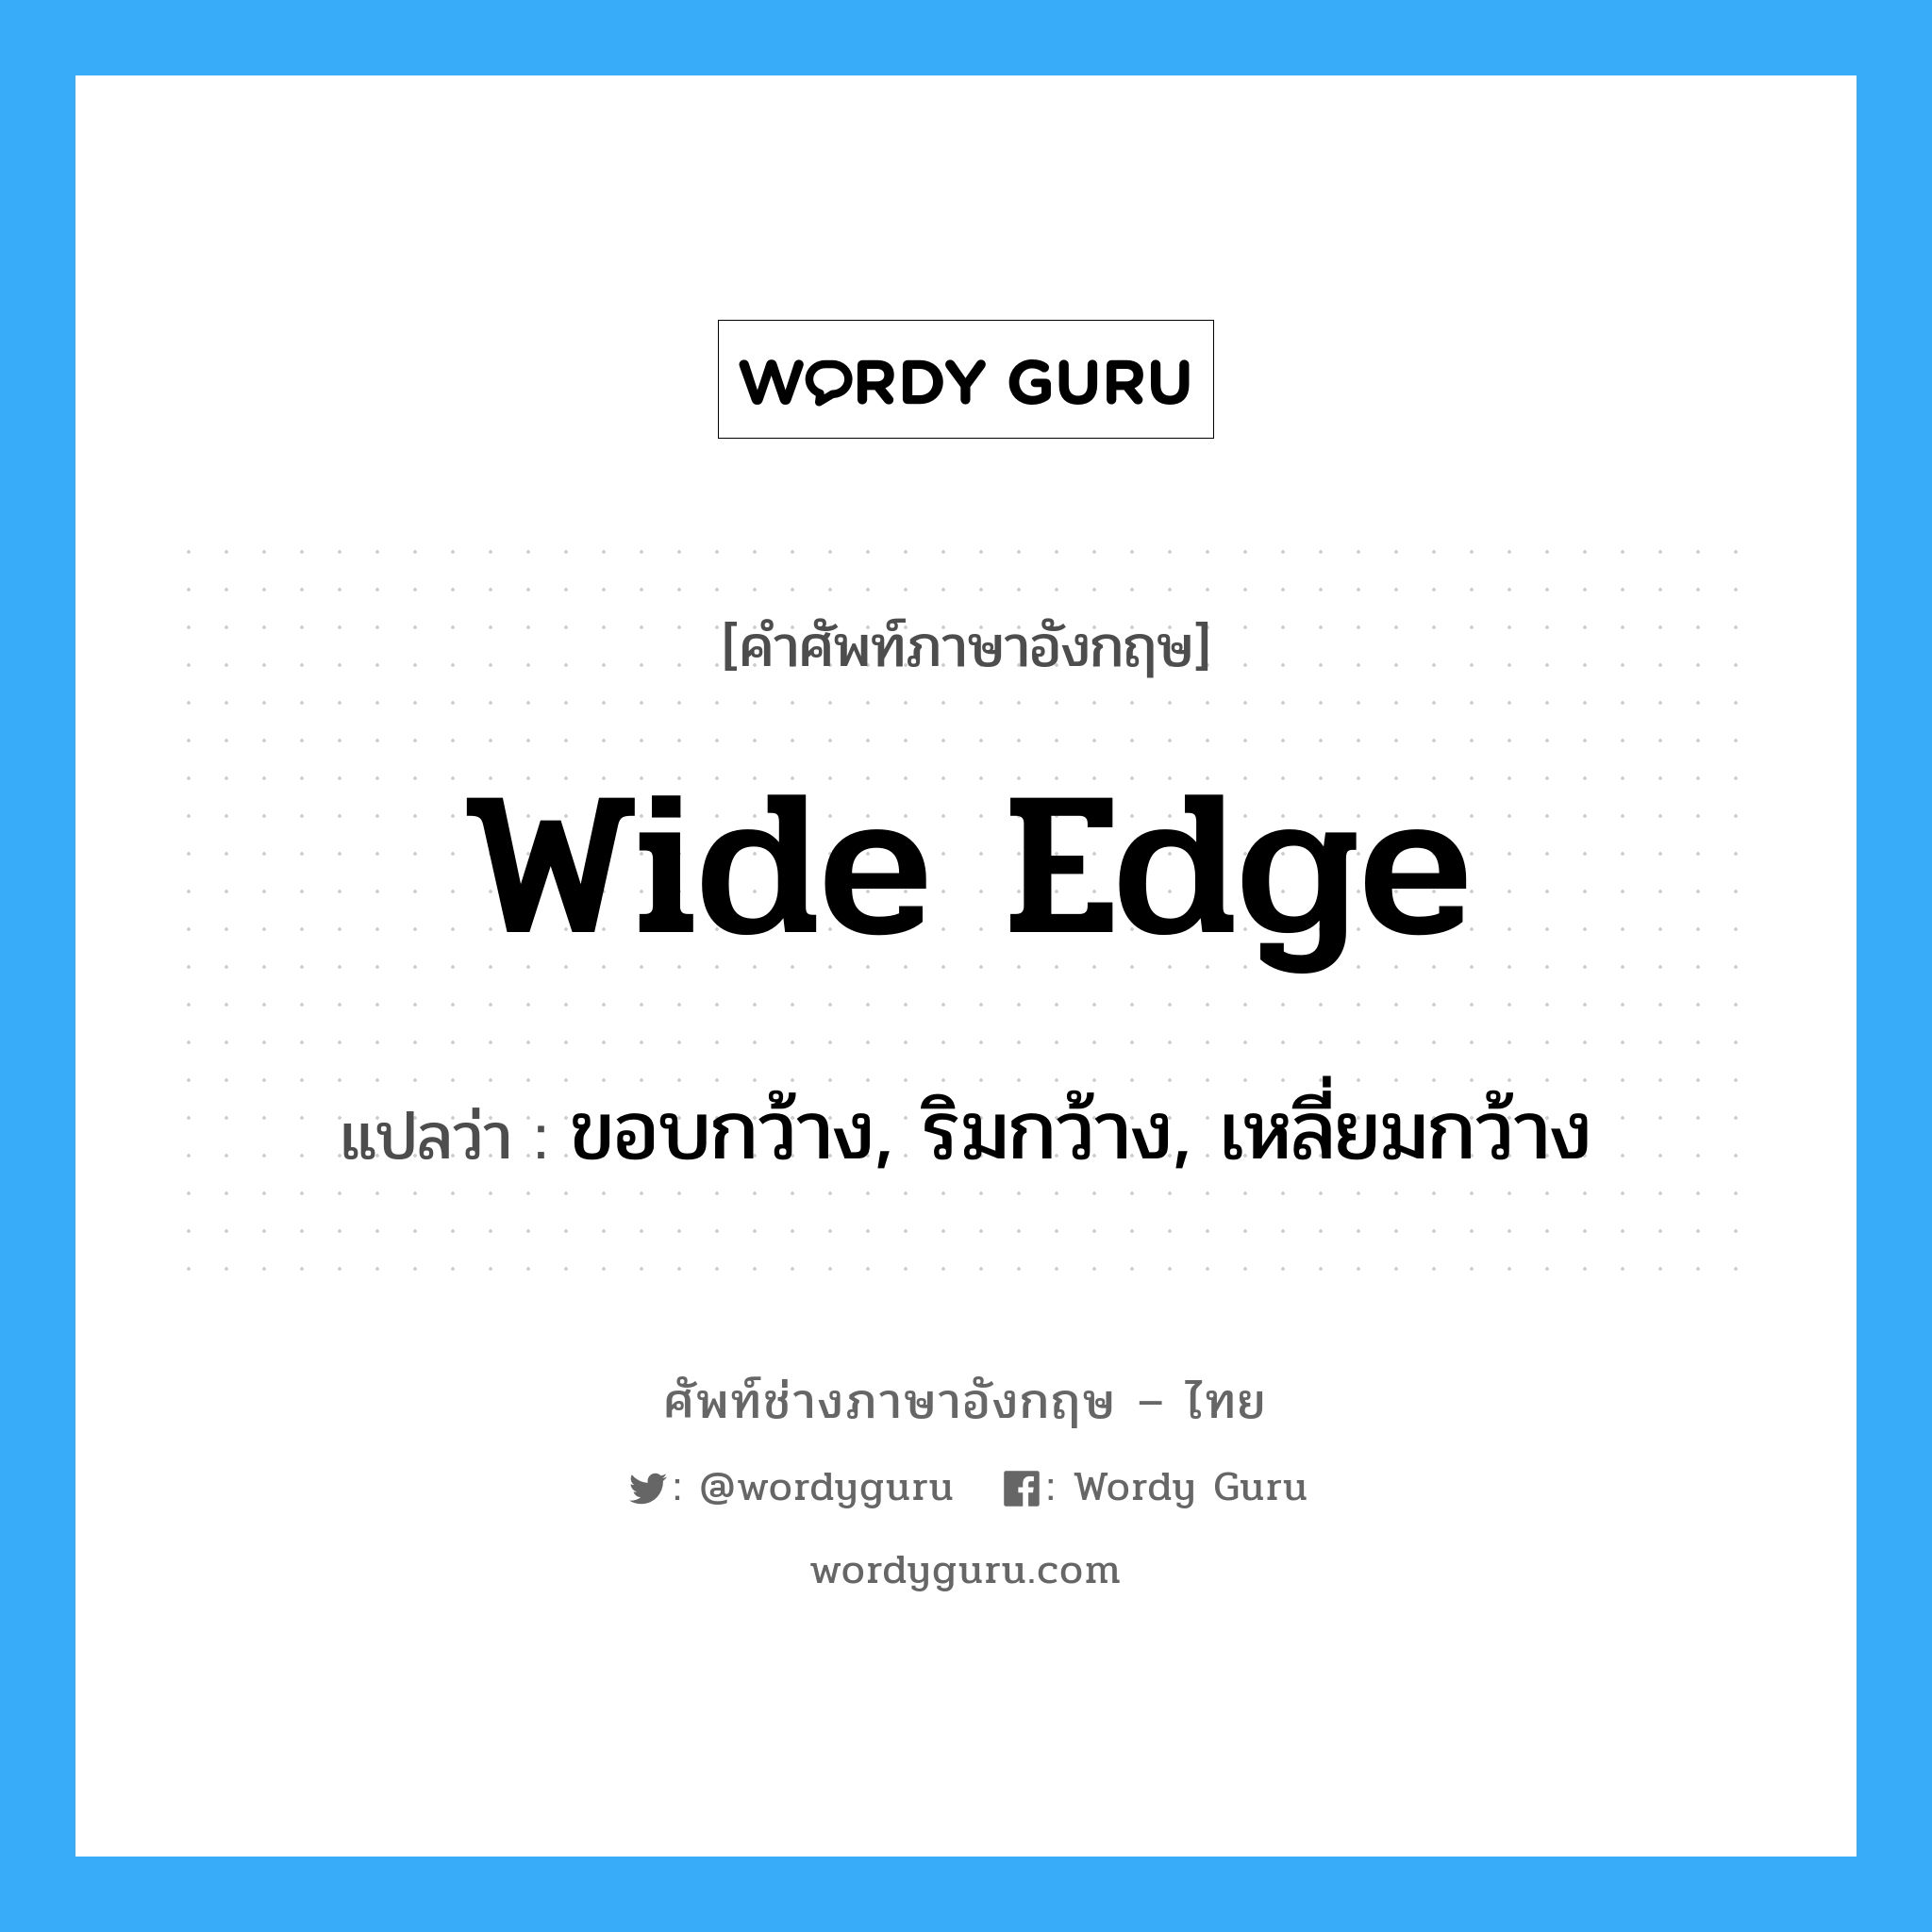 wide edge แปลว่า?, คำศัพท์ช่างภาษาอังกฤษ - ไทย wide edge คำศัพท์ภาษาอังกฤษ wide edge แปลว่า ขอบกว้าง, ริมกว้าง, เหลี่ยมกว้าง